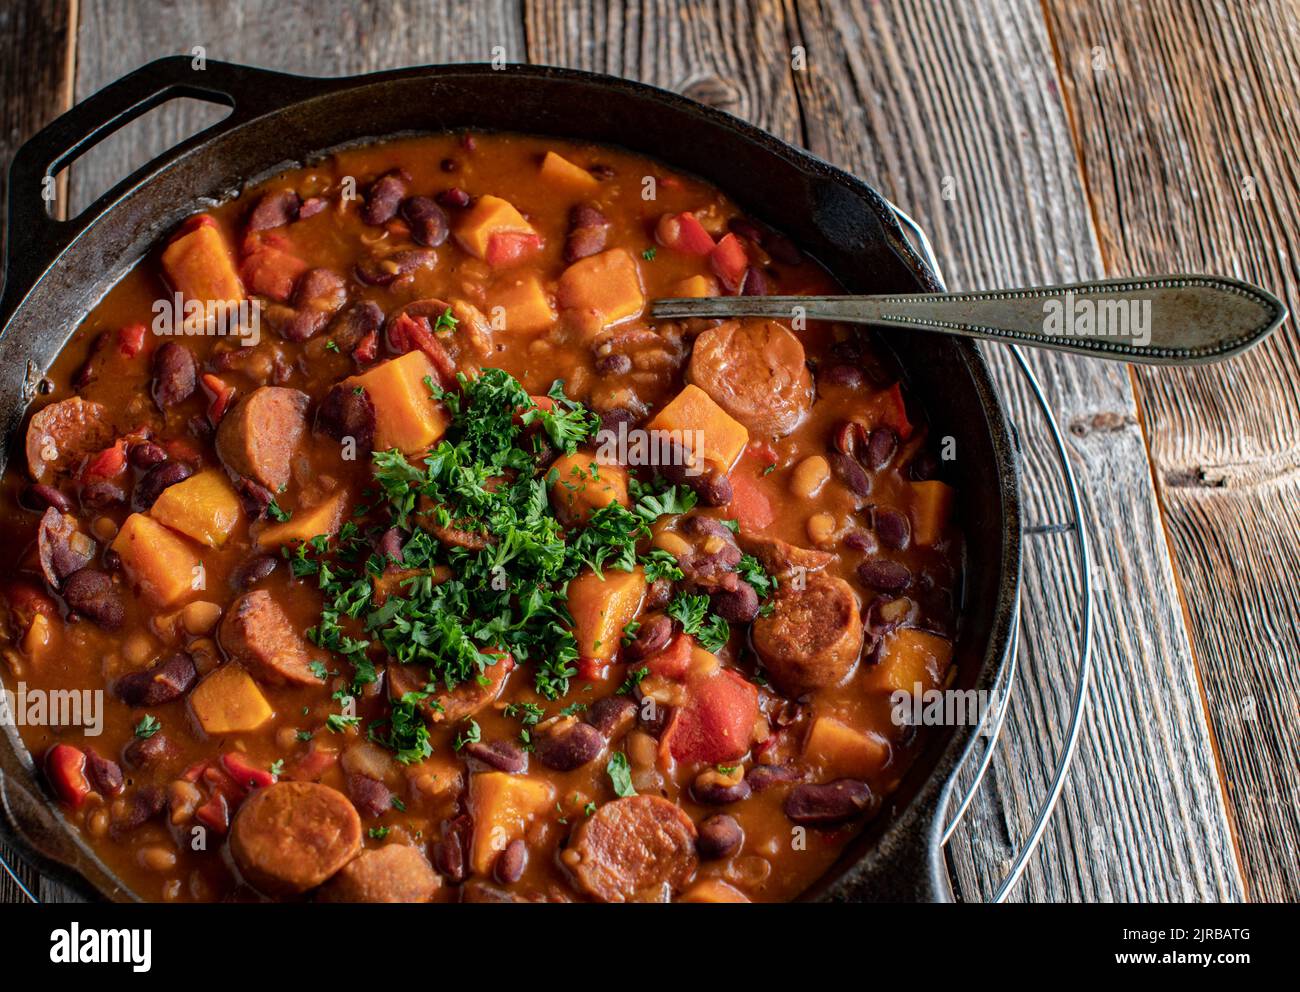 Ragoût de saucisse de chorizo avec des patates douces, des haricots et des légumes dans une casserole en fonte Banque D'Images